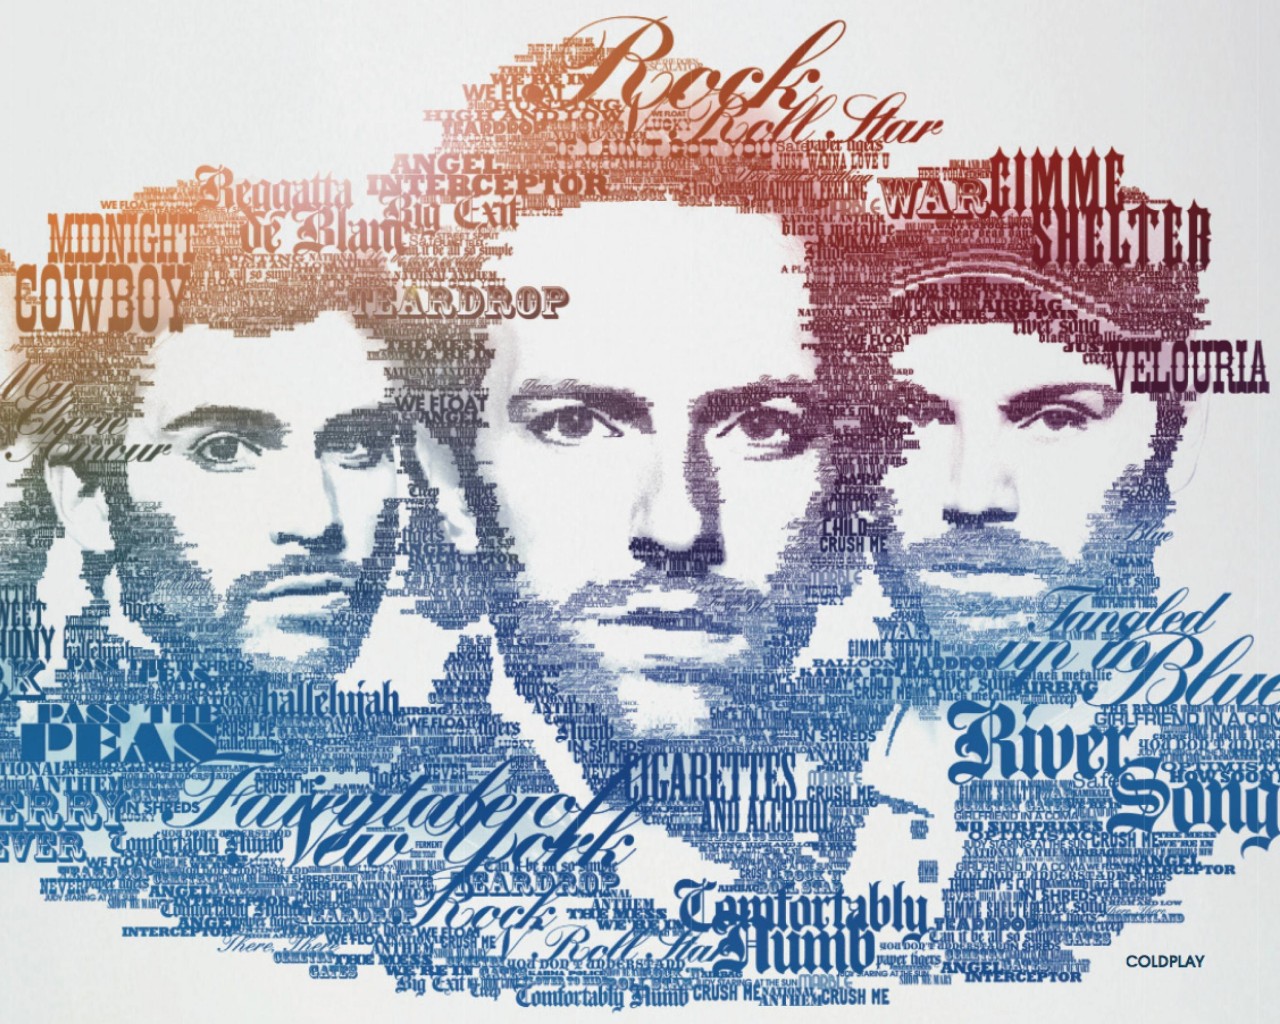 Coldplay Typographic Portrait Wallpaper for Desktop 1280x1024